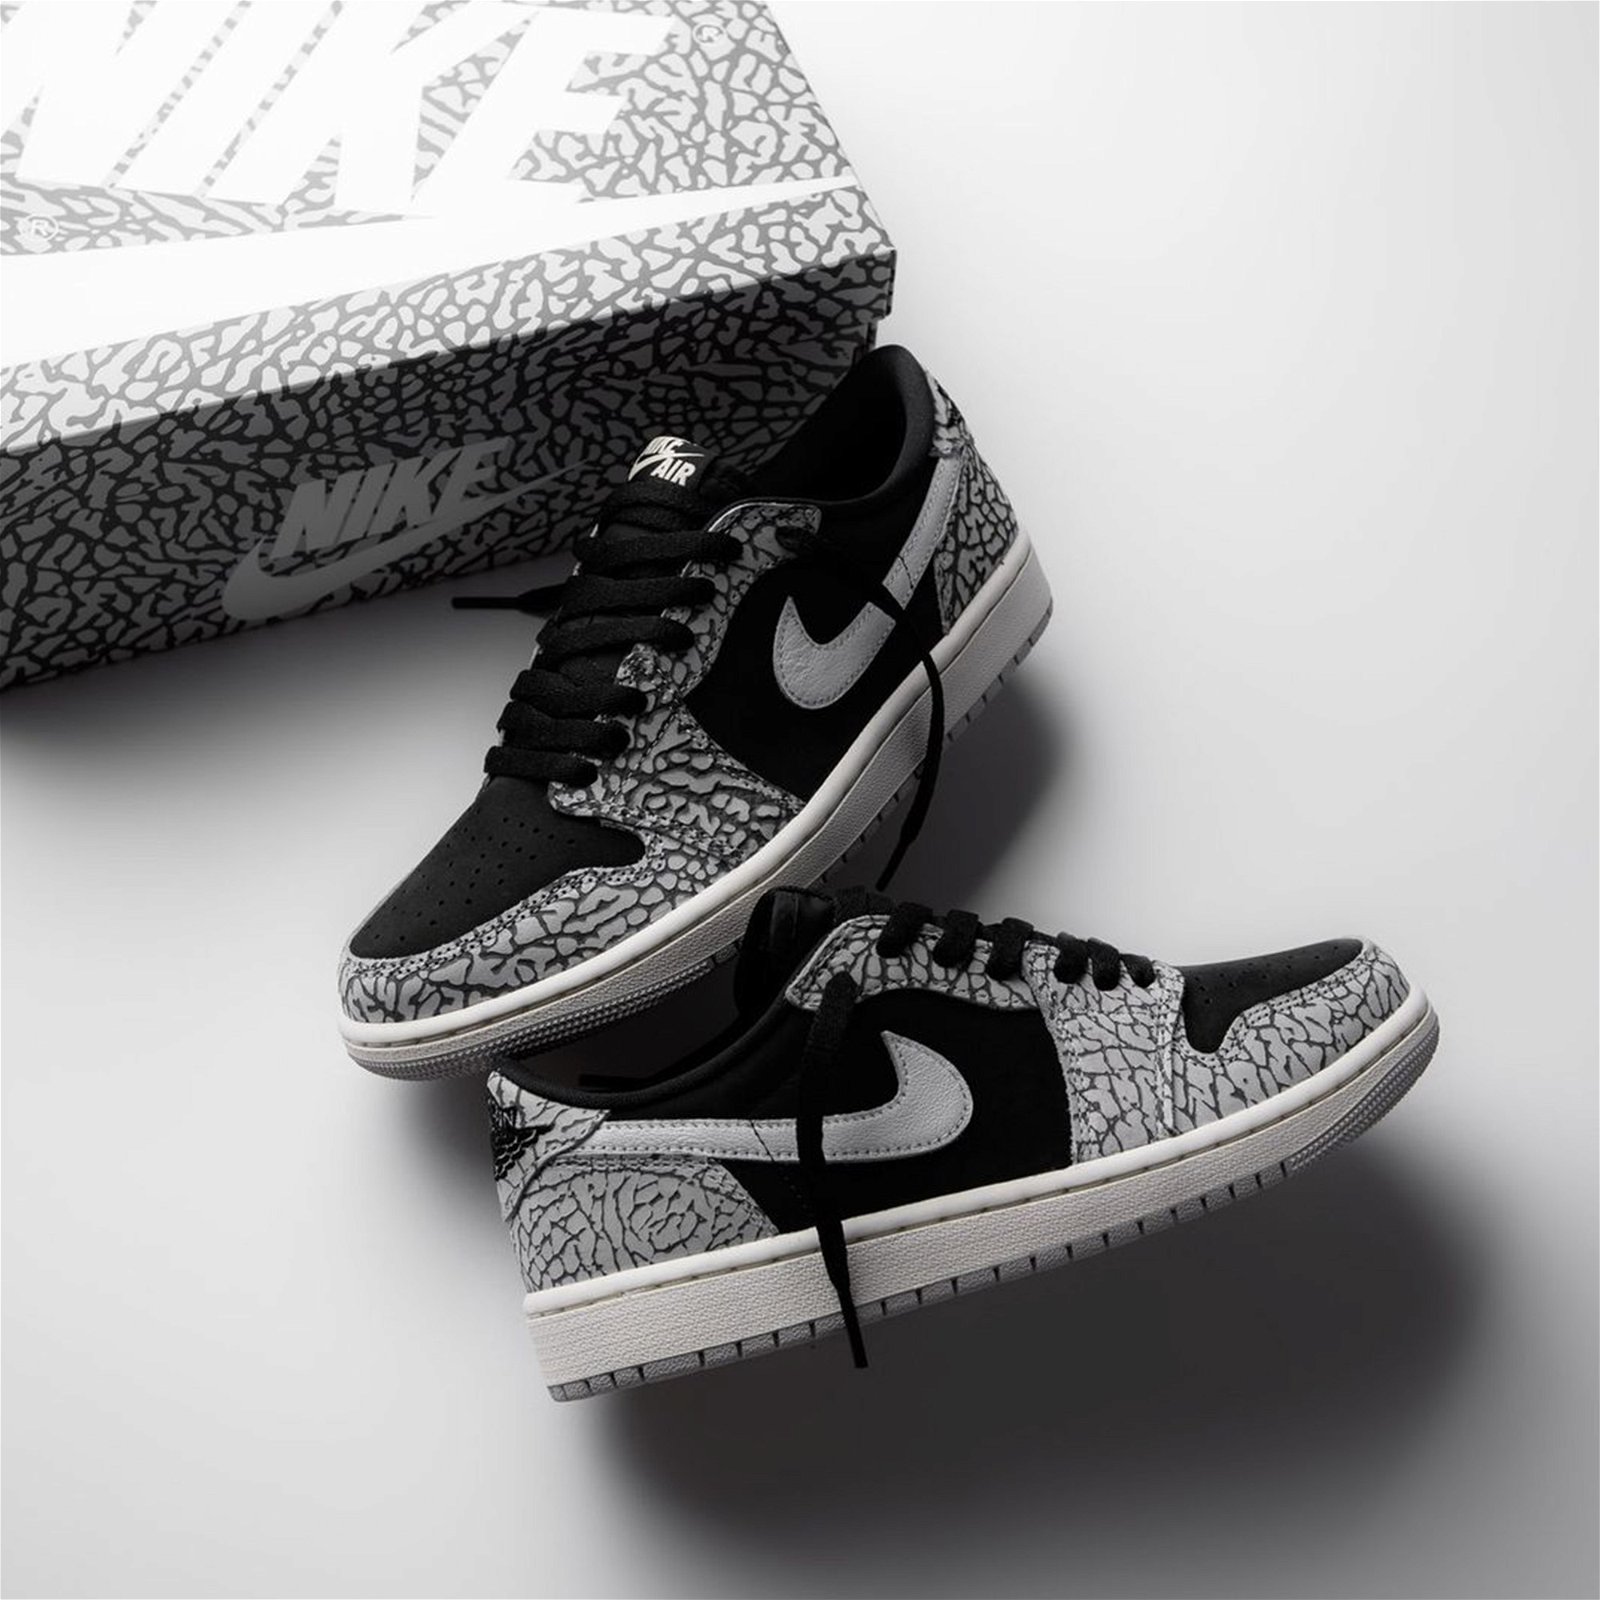 Sneaker of the Week by FLEXDOG - Air Jordan 1 Retro Low OG “Black